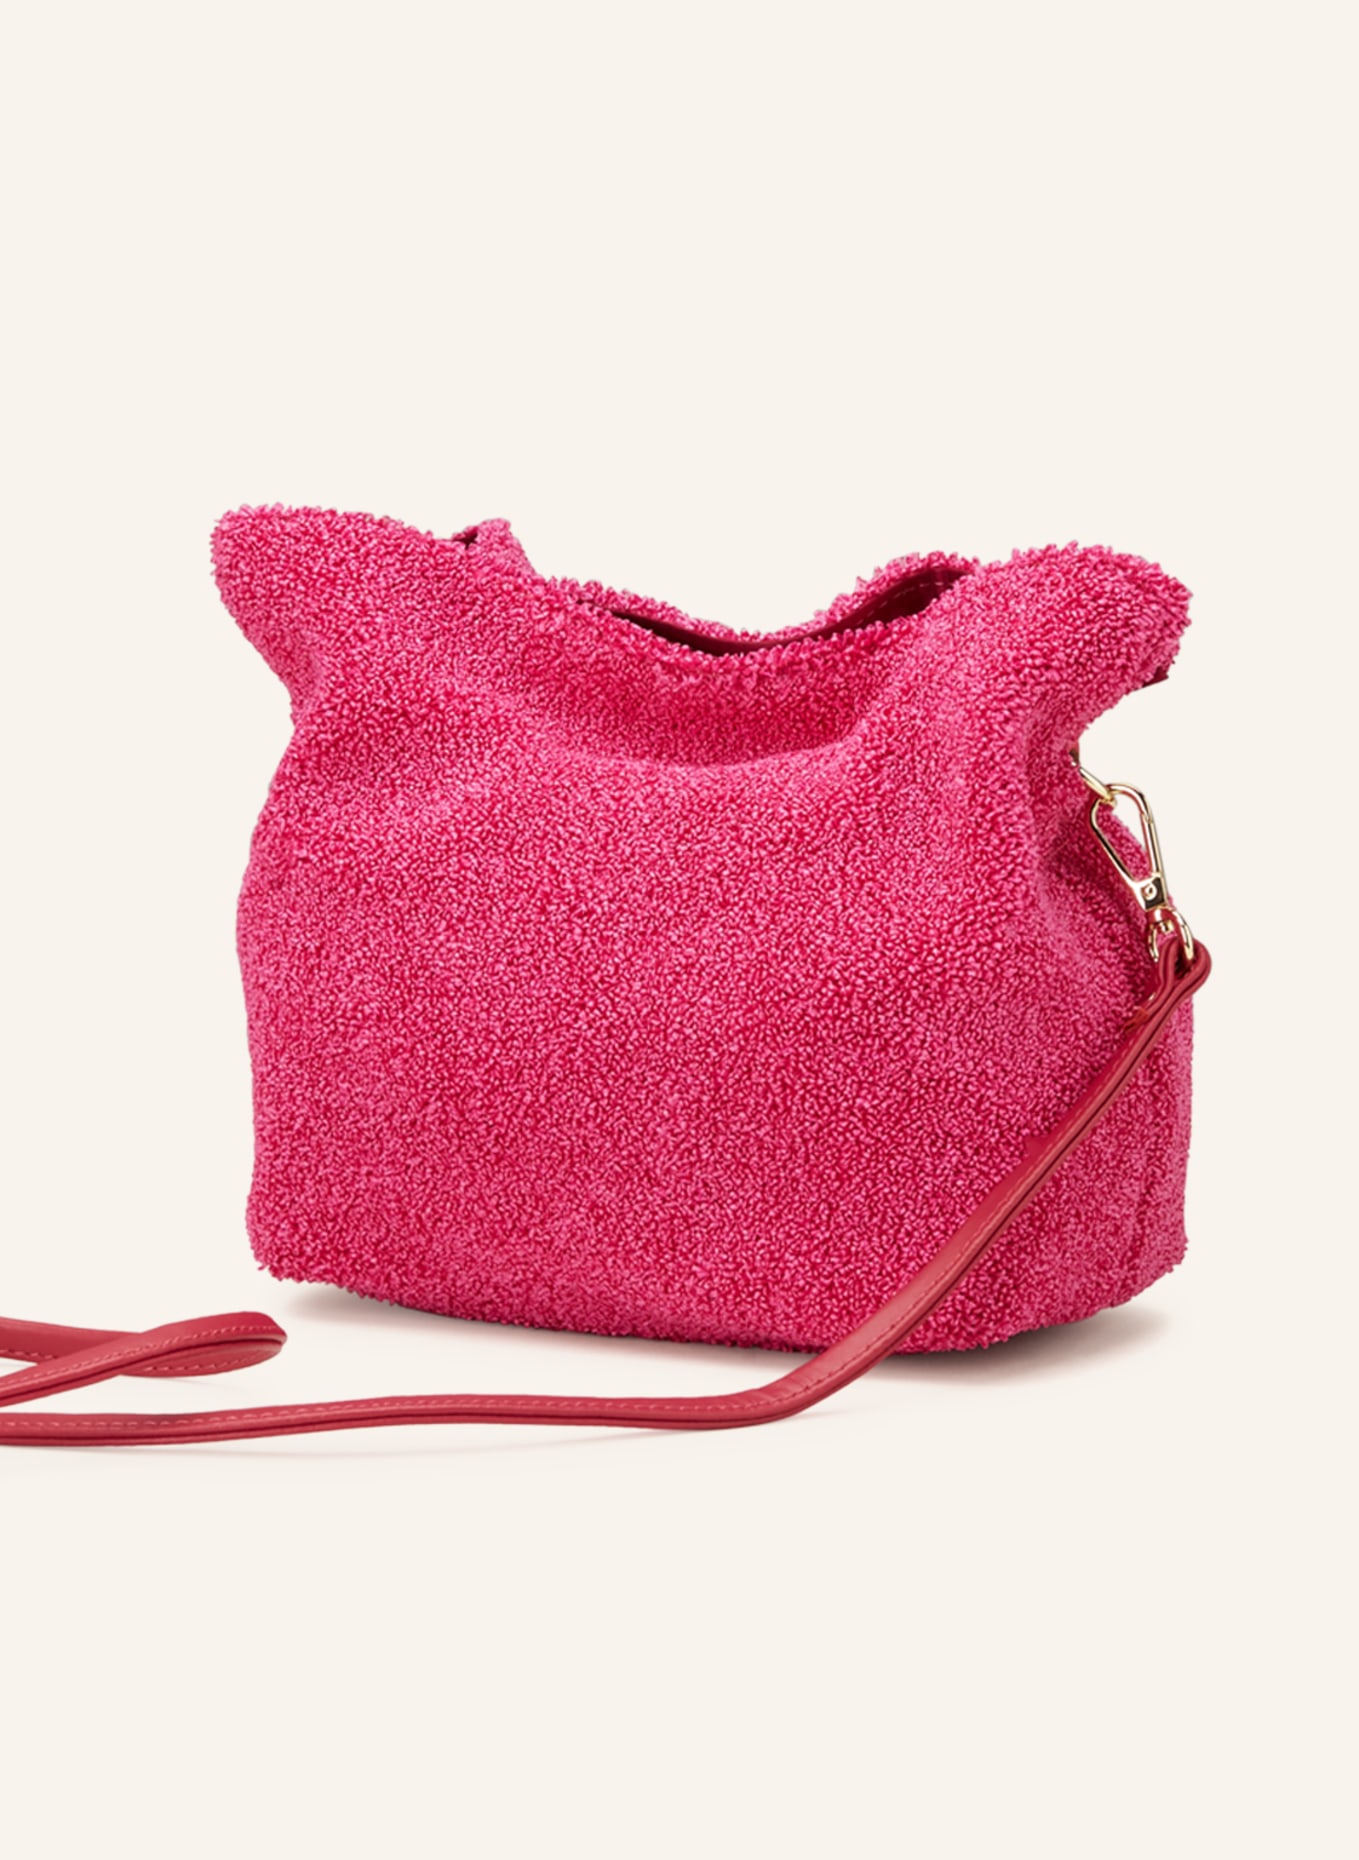 ViaMailBag Handtasche ARUBA SOFT, Farbe: PINK (Bild 2)